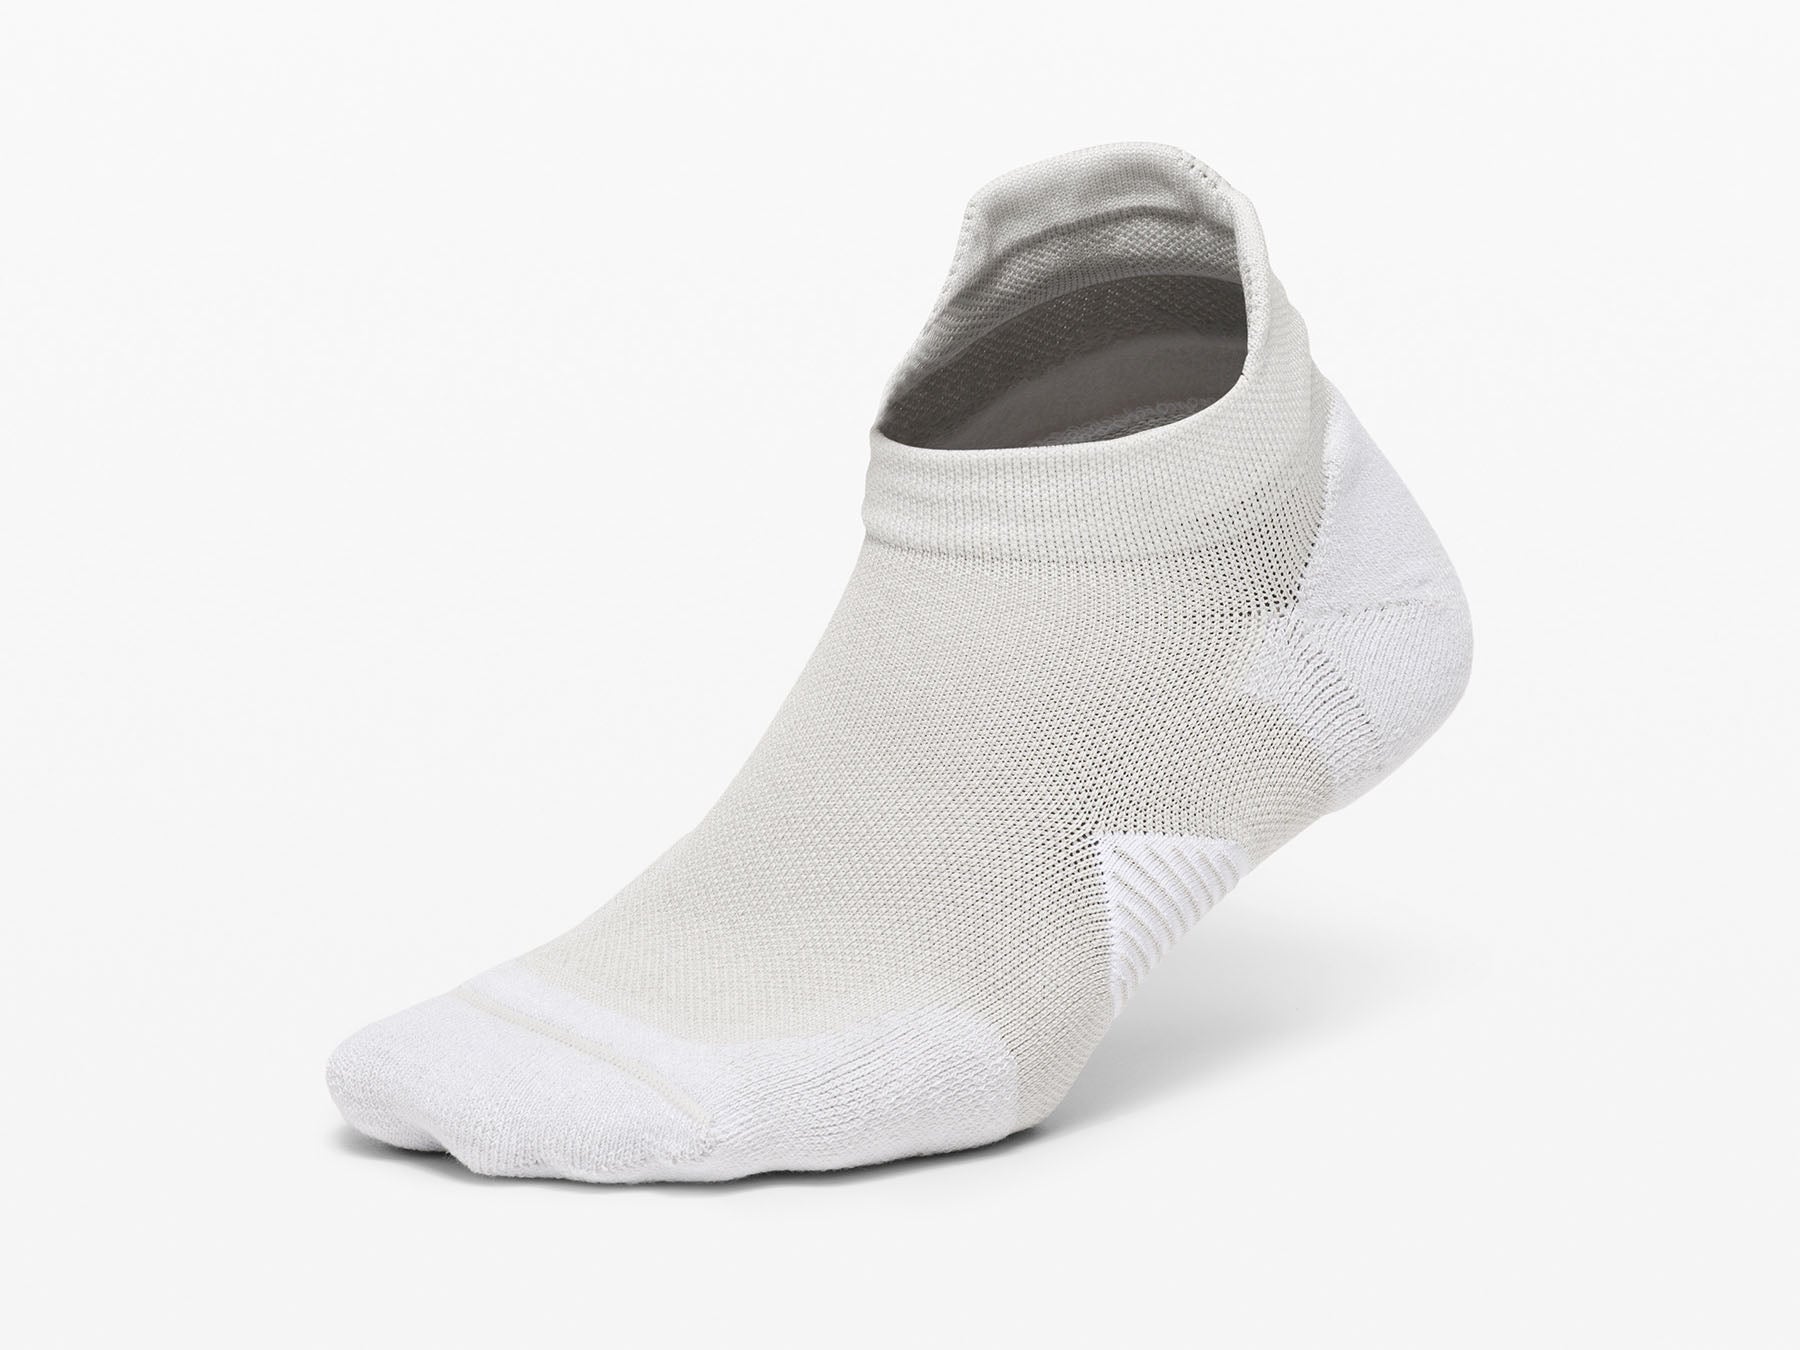 best women's running socks to prevent blisters